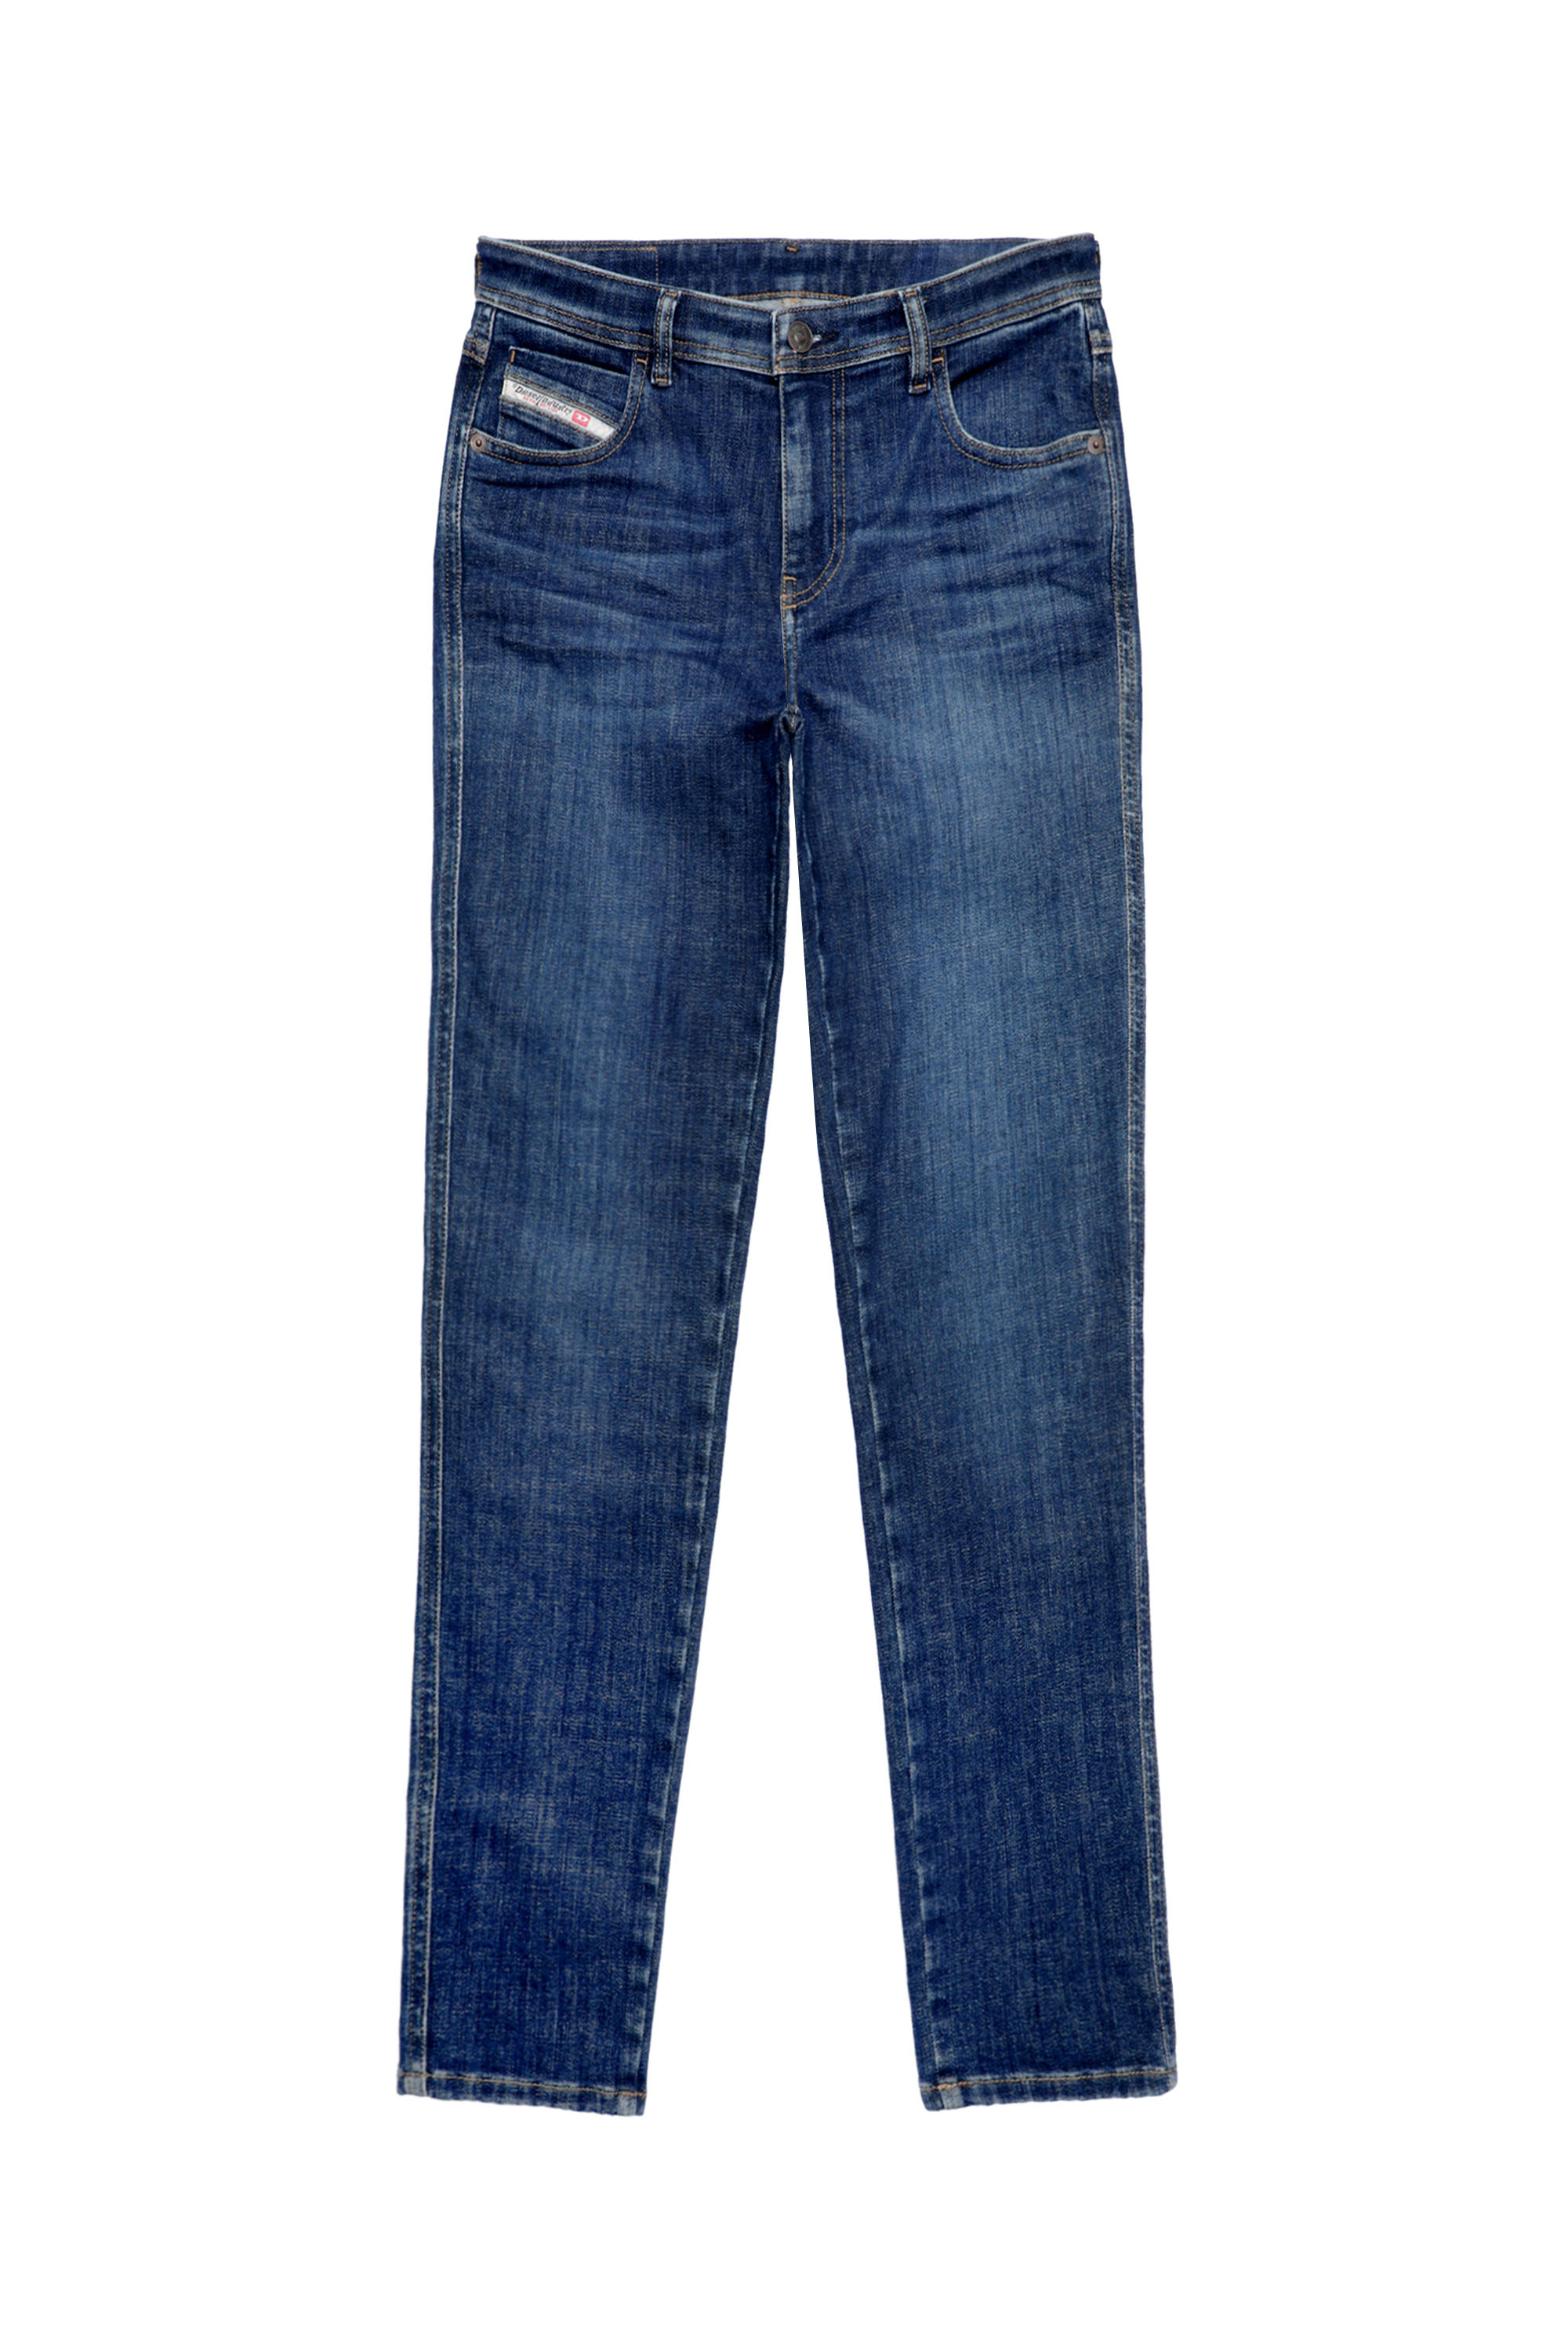 Diesel - Skinny Jeans 2015 Babhila 09C58, Dark Blue - Image 6